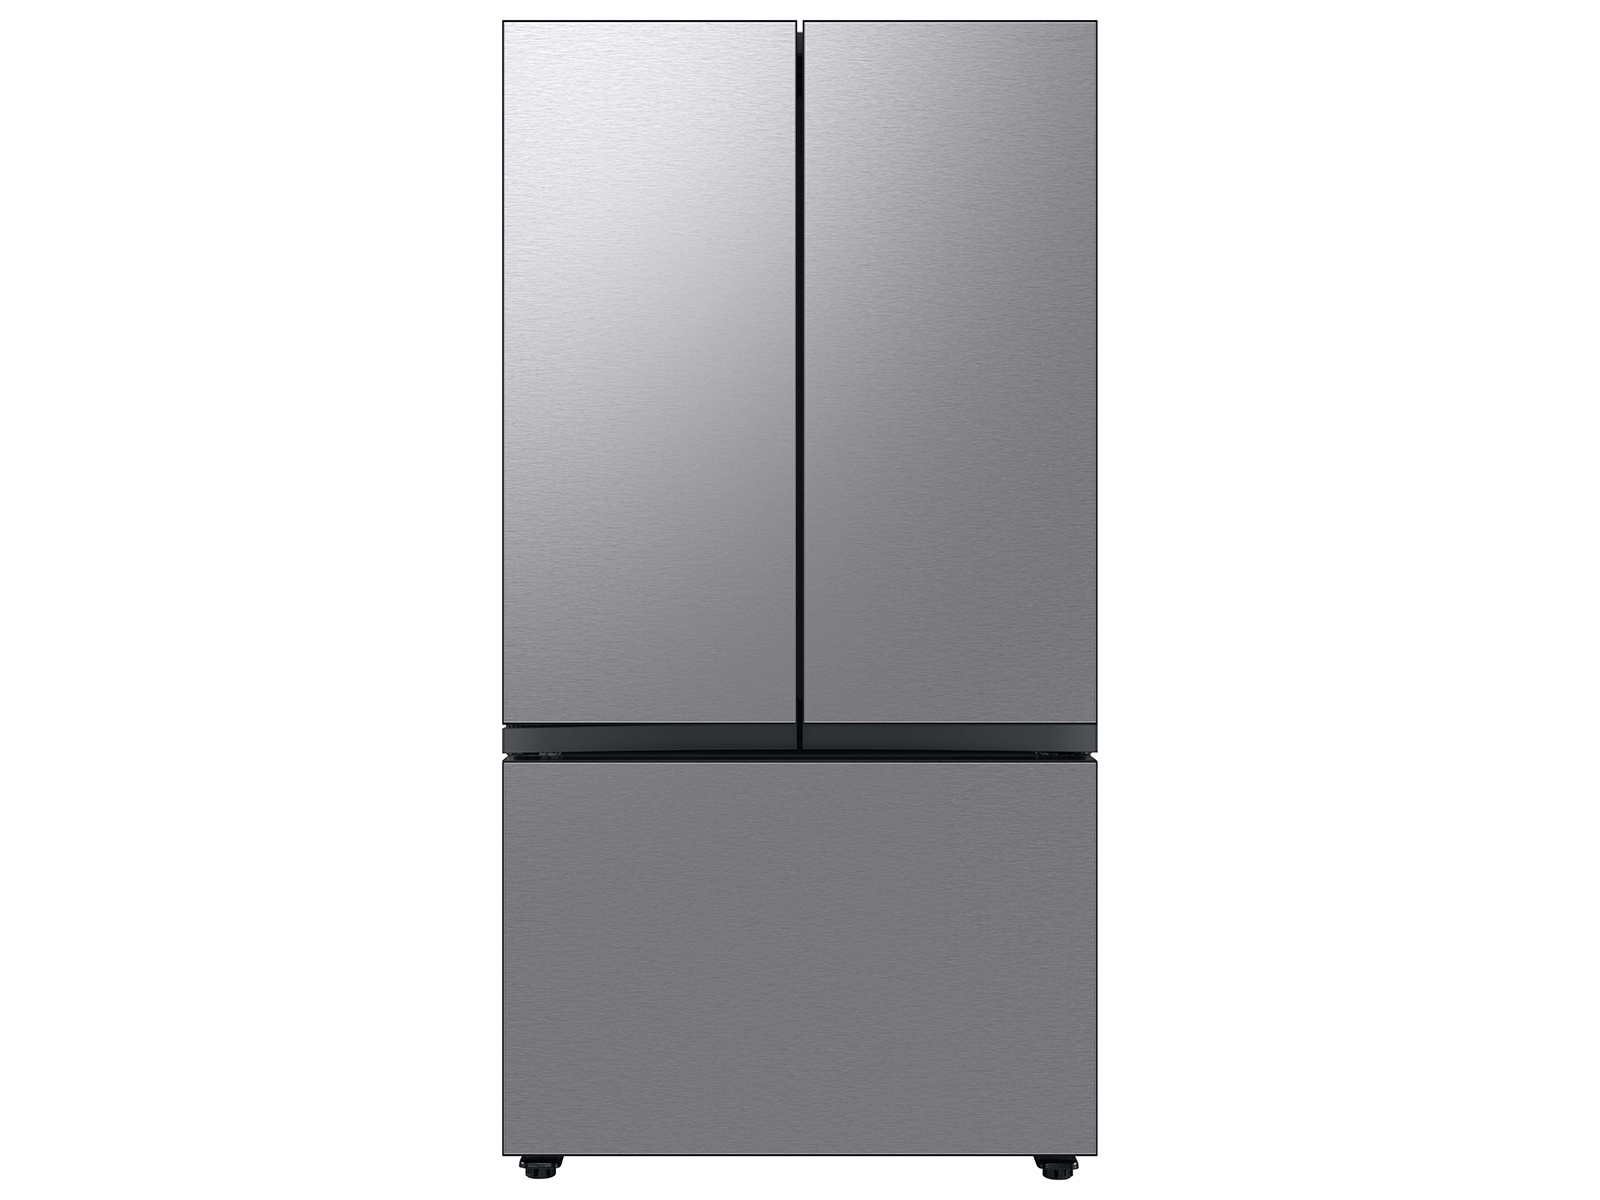 Photos - Fridge Samsung Bespoke 3-Door French Door Refrigerator  with Beverage (24 cu. ft.)